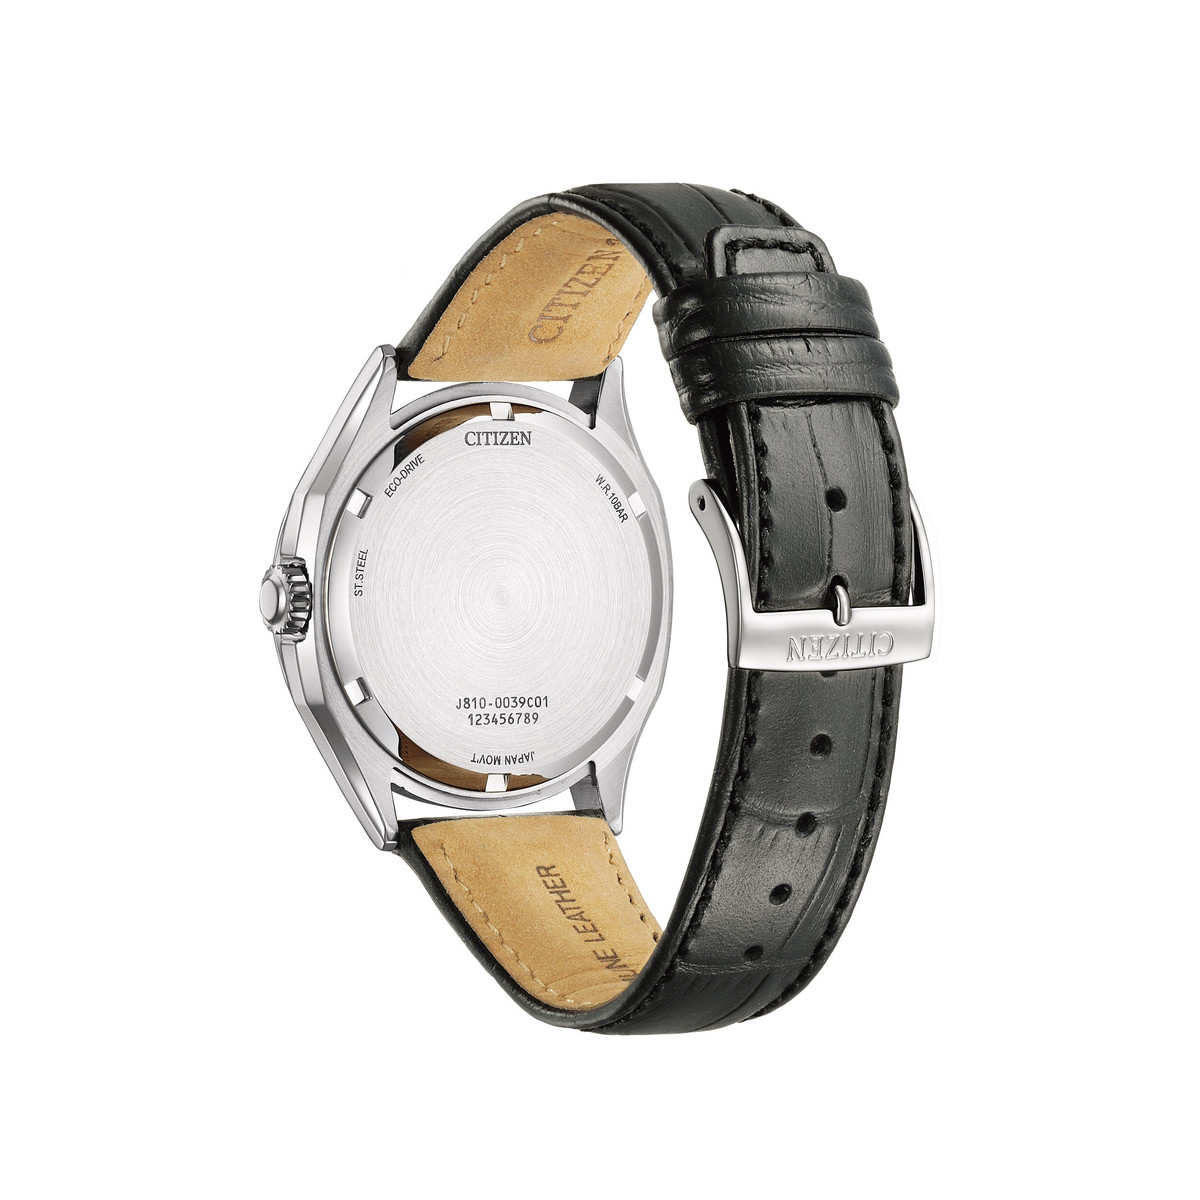 Montre CITIZEN platform classic homme eco-drive acier bracelet cuir noir - vue 3